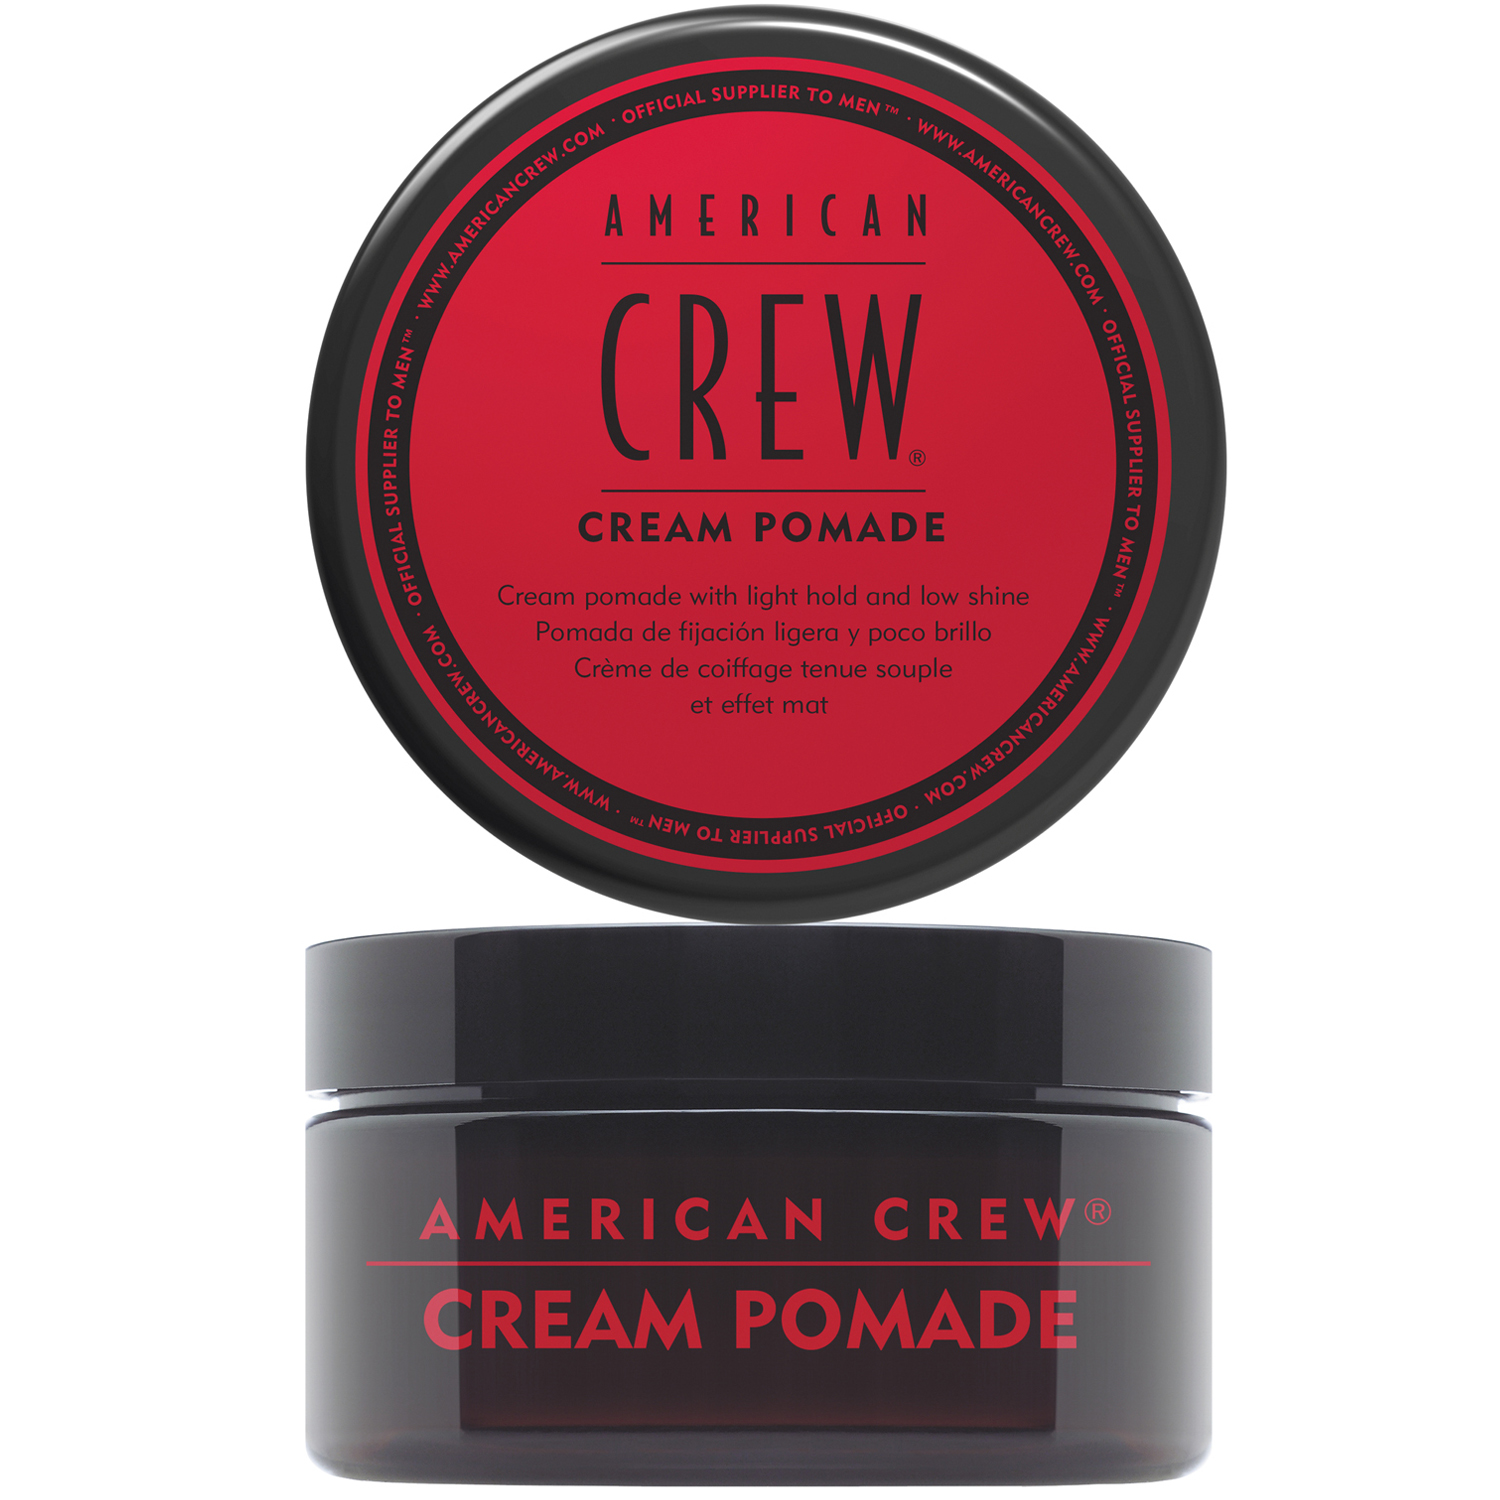 American Crew Крем-помада с легкой фиксацией и низким уровнем блеска Cream Pomade, 85 мл (American Crew, Styling) крем помада для волос легкой фиксации american